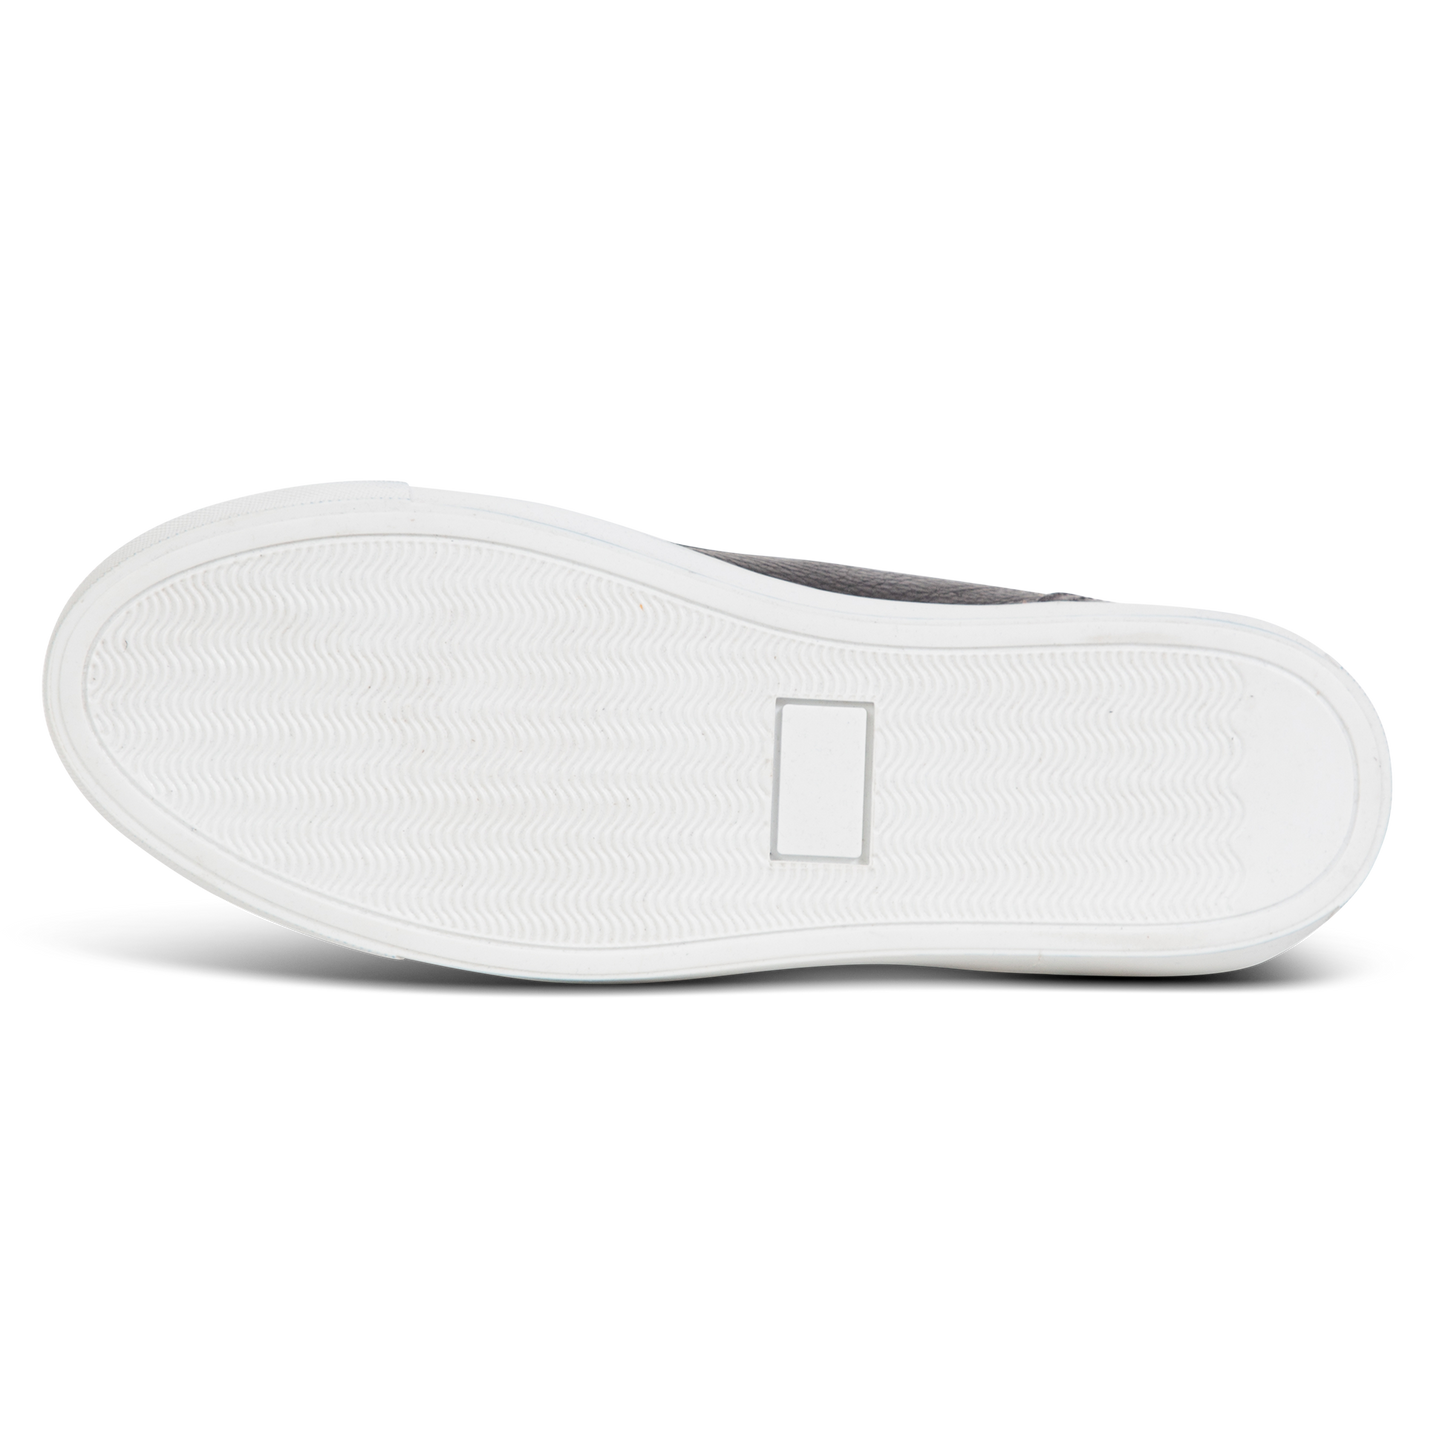 White rubber sole on FREEBIRD men's Shelby black shoe